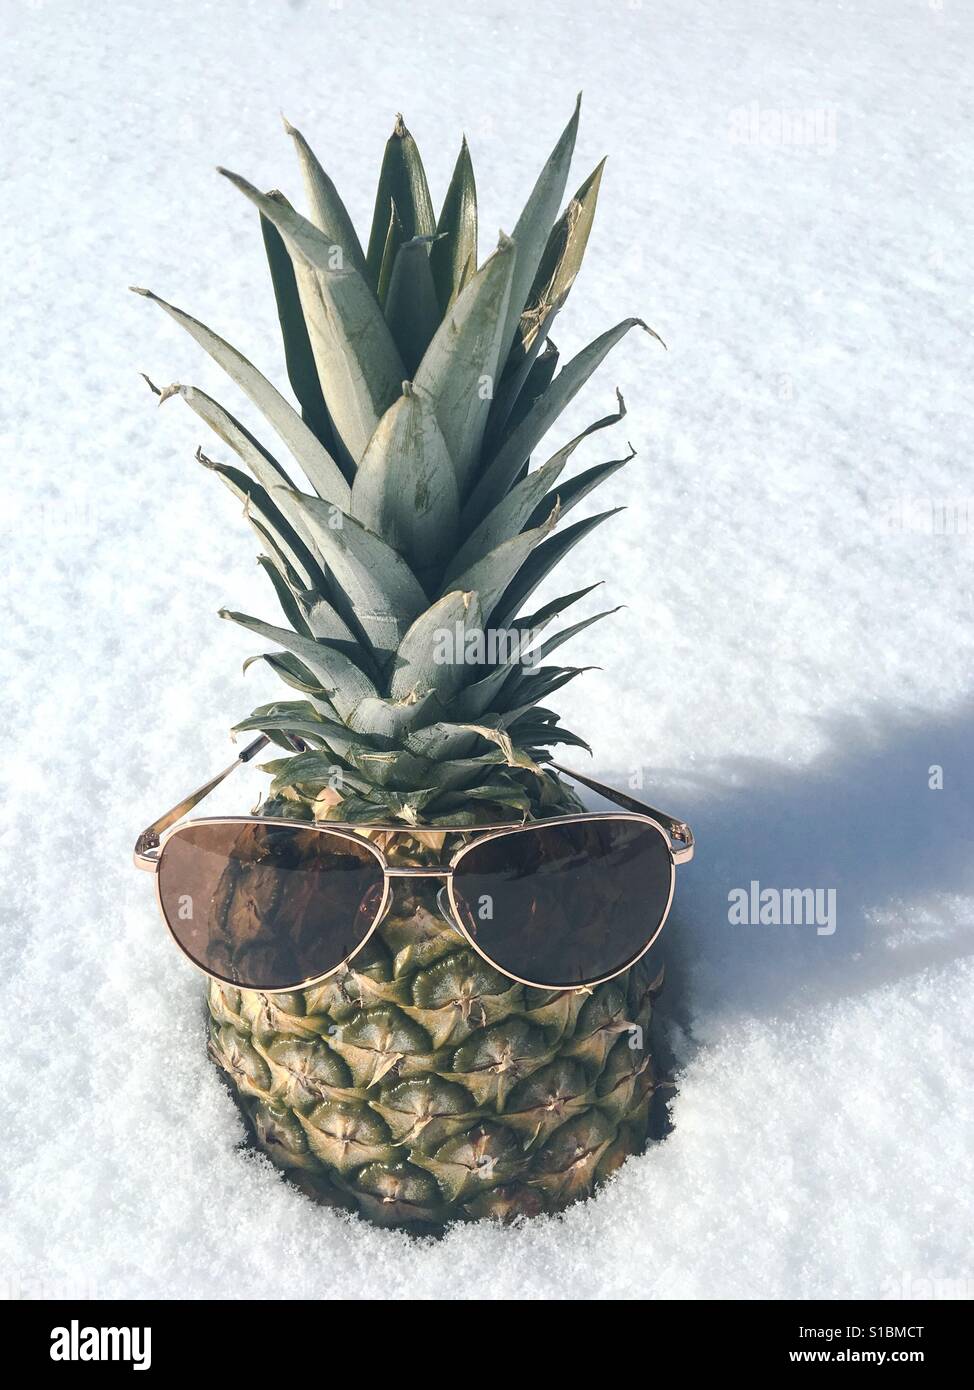 Lunettes de soleil sur l'ananas dans la neige Banque D'Images